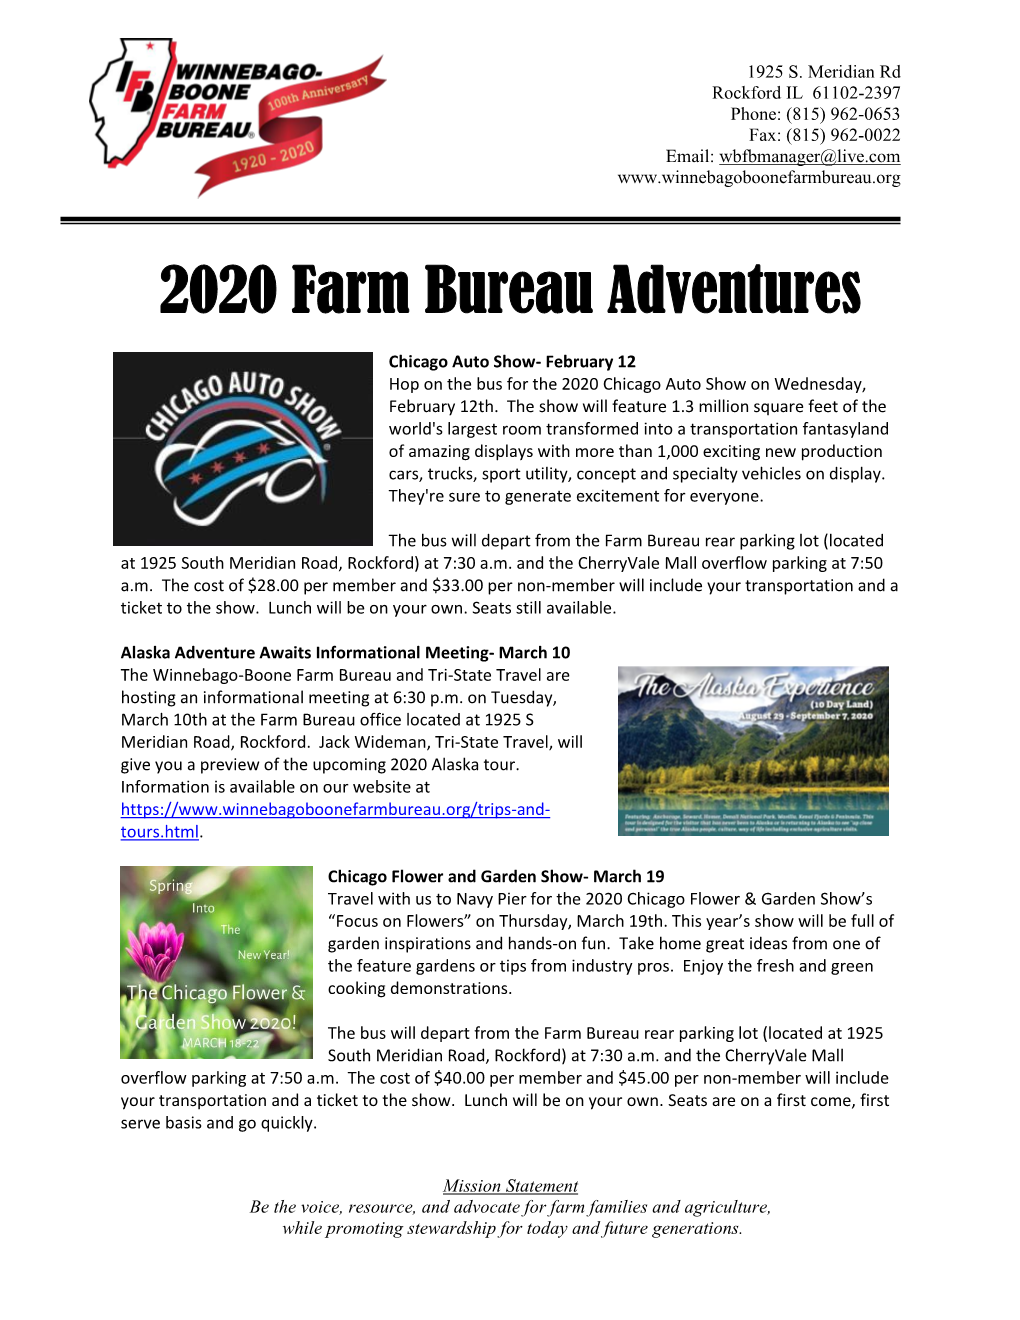 2020 Farm Bureau Adventures